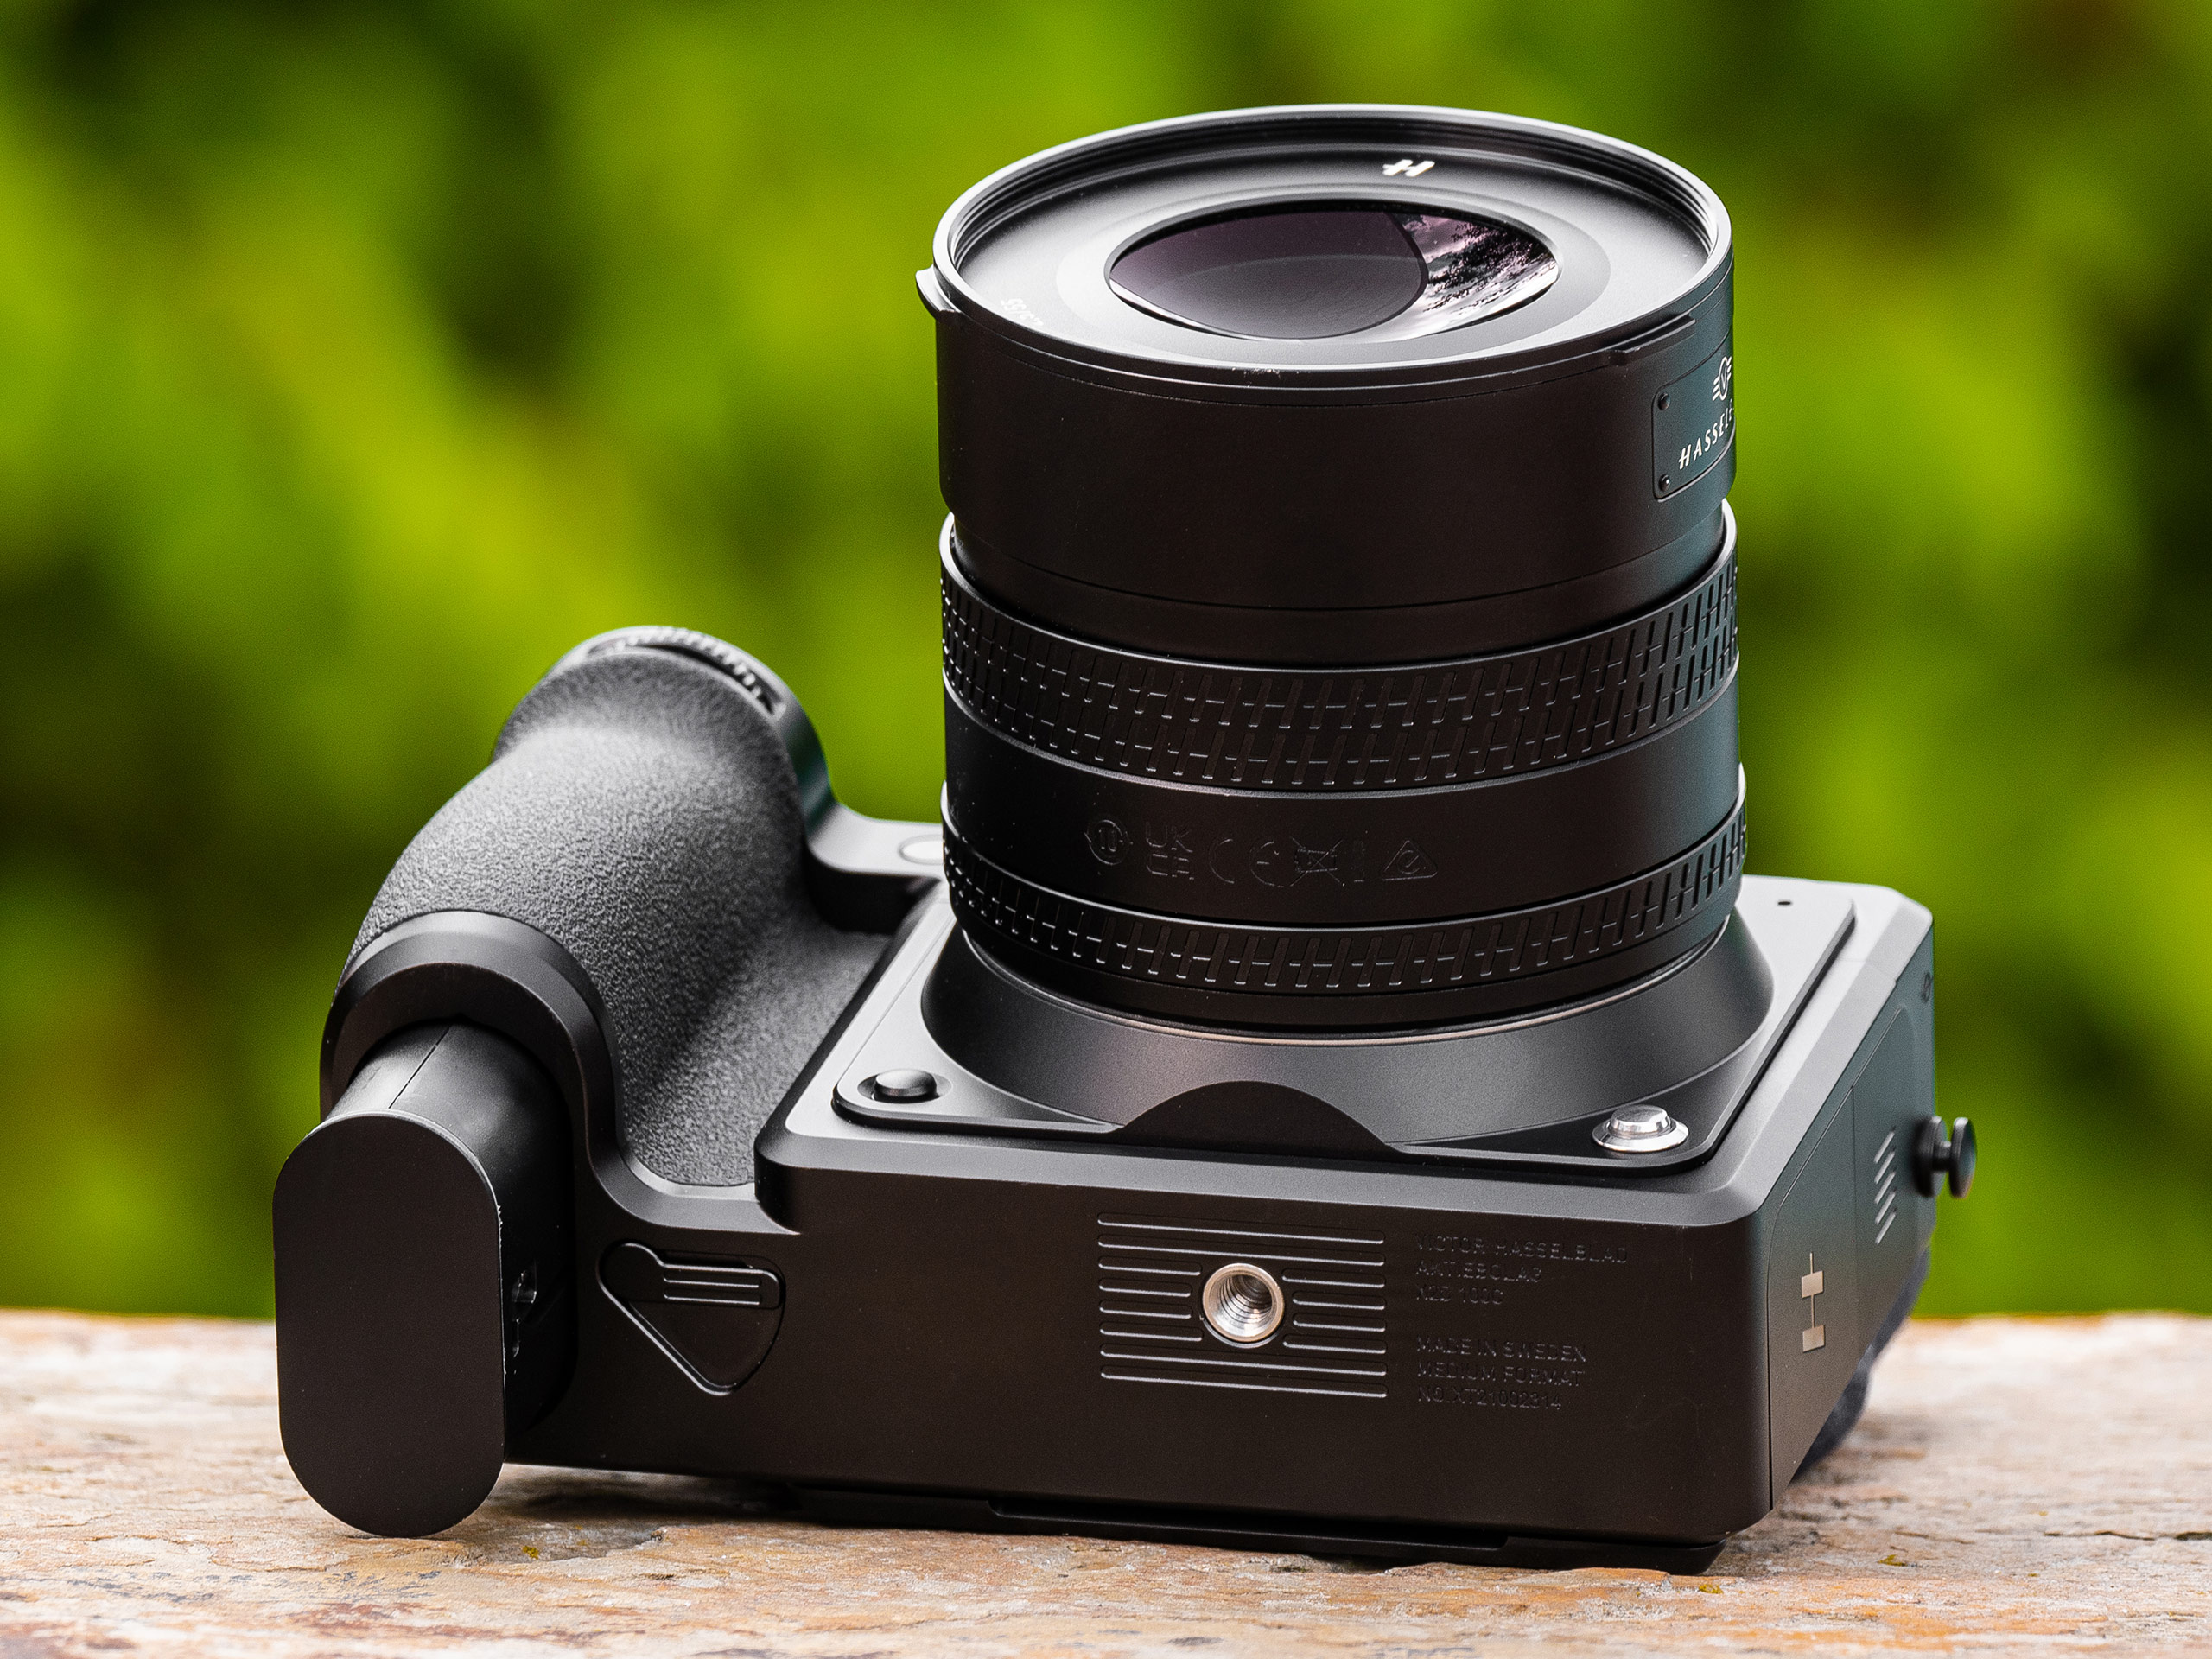 Hasselblad X2D 100C camera, photo: Damien Demolder